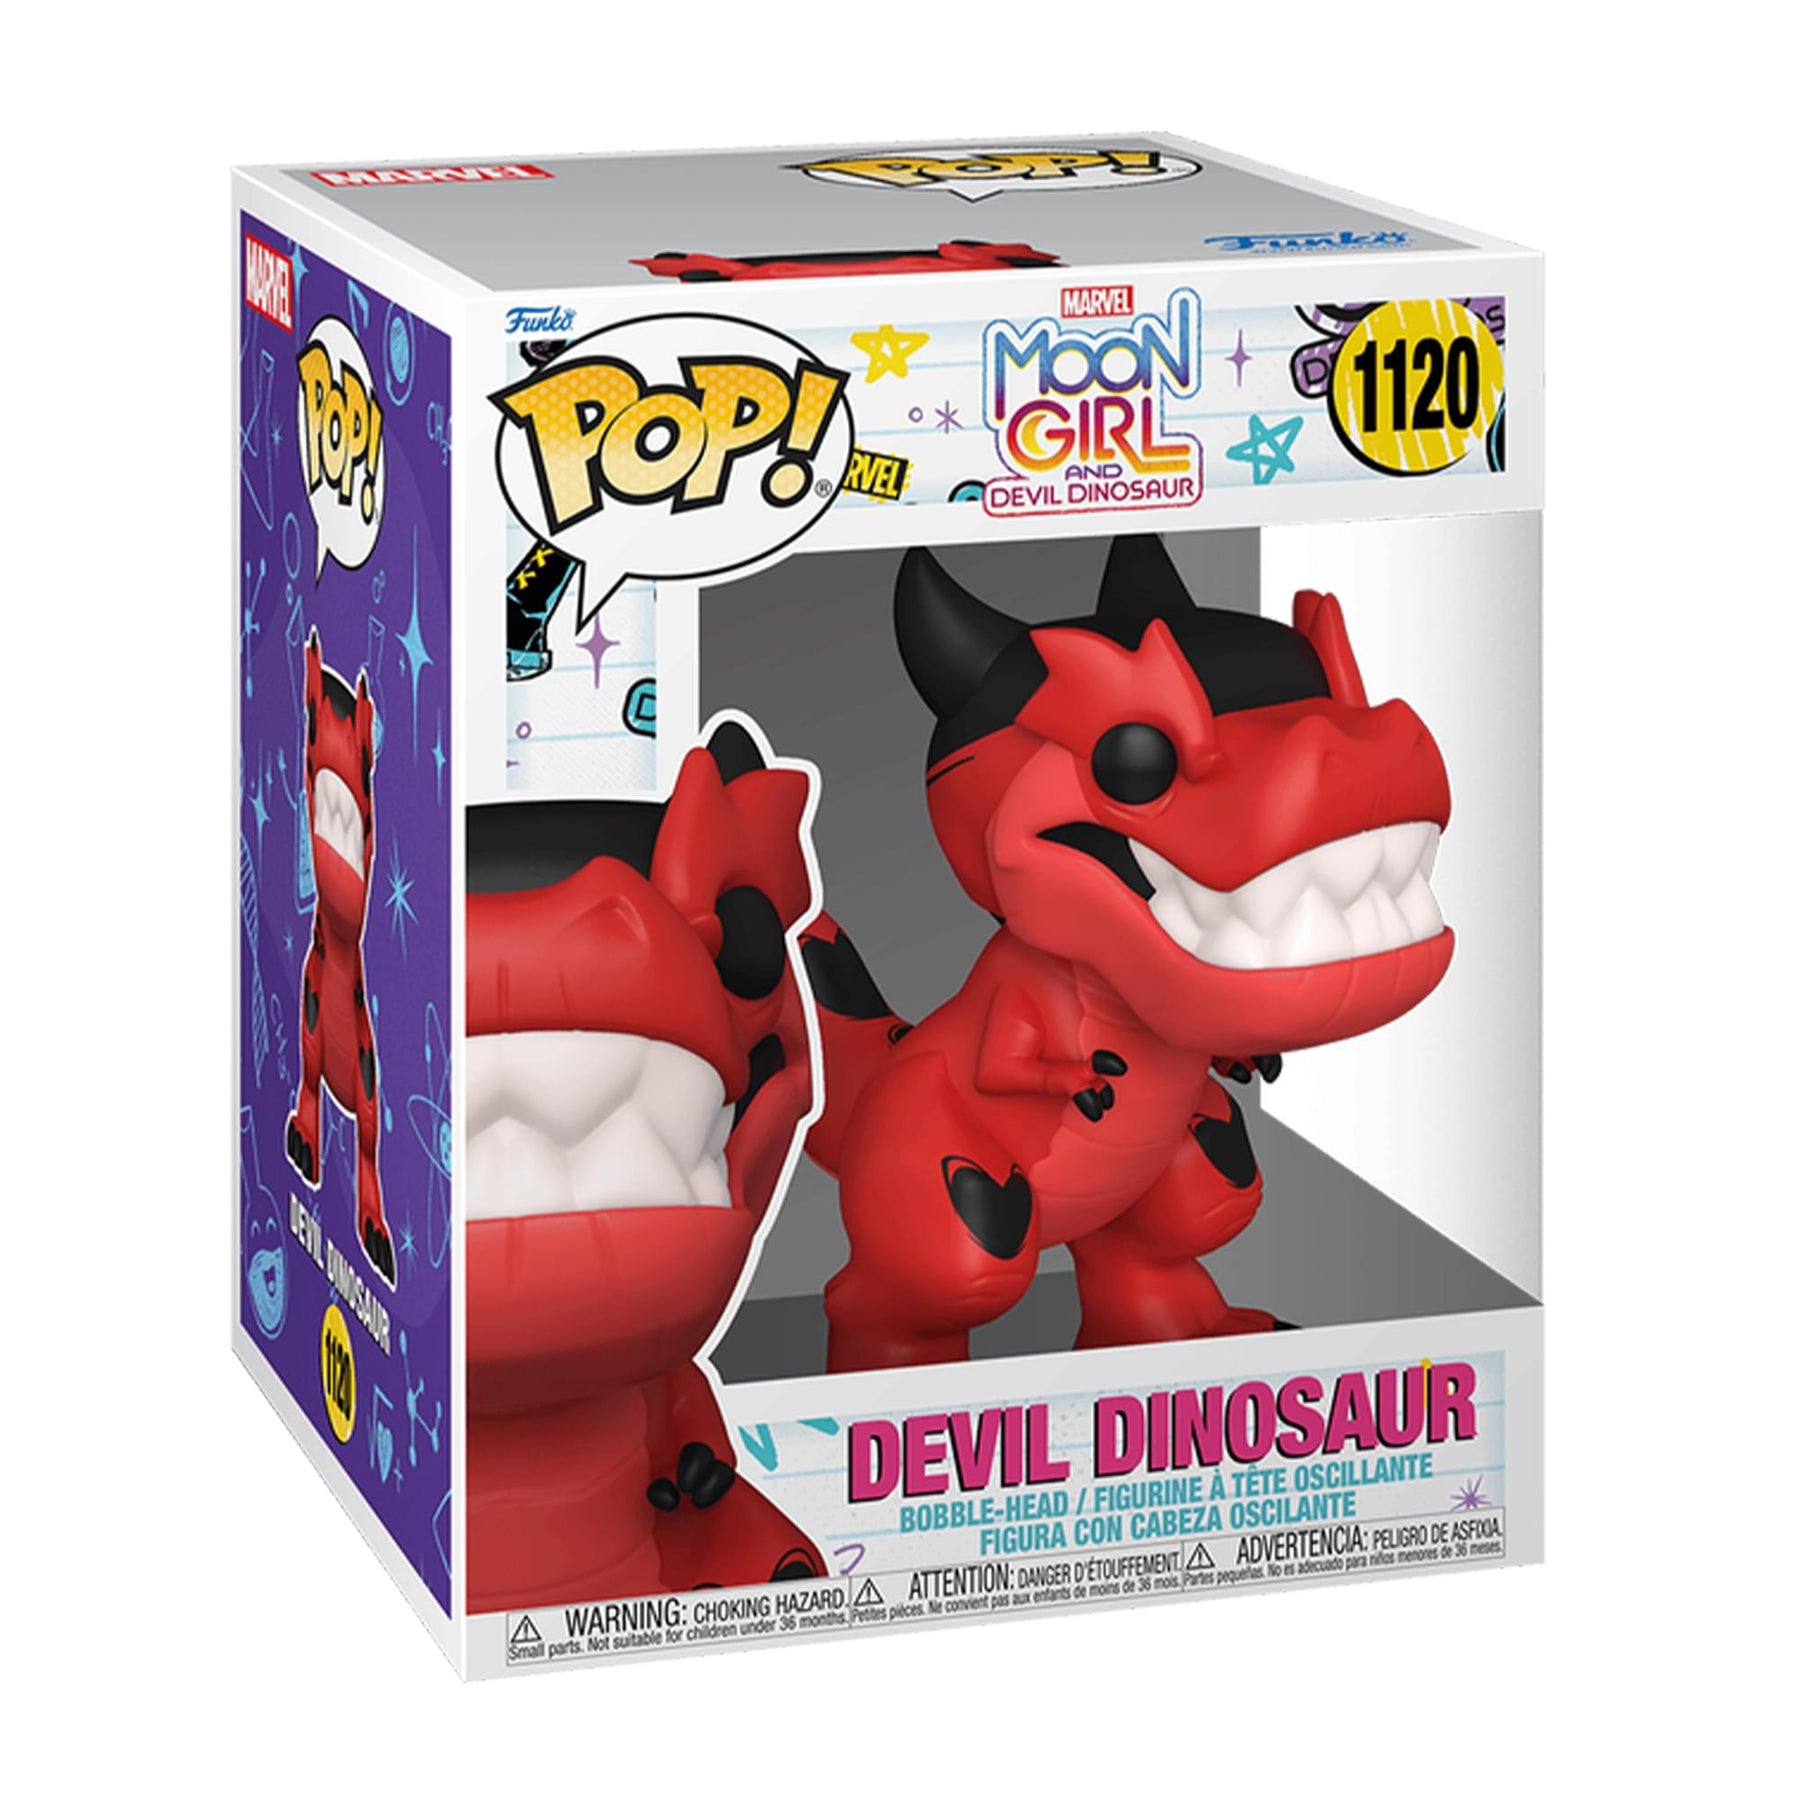 Marvel Moon Girl and Devil Dinosaur Funko POP | Devil Dinosaur